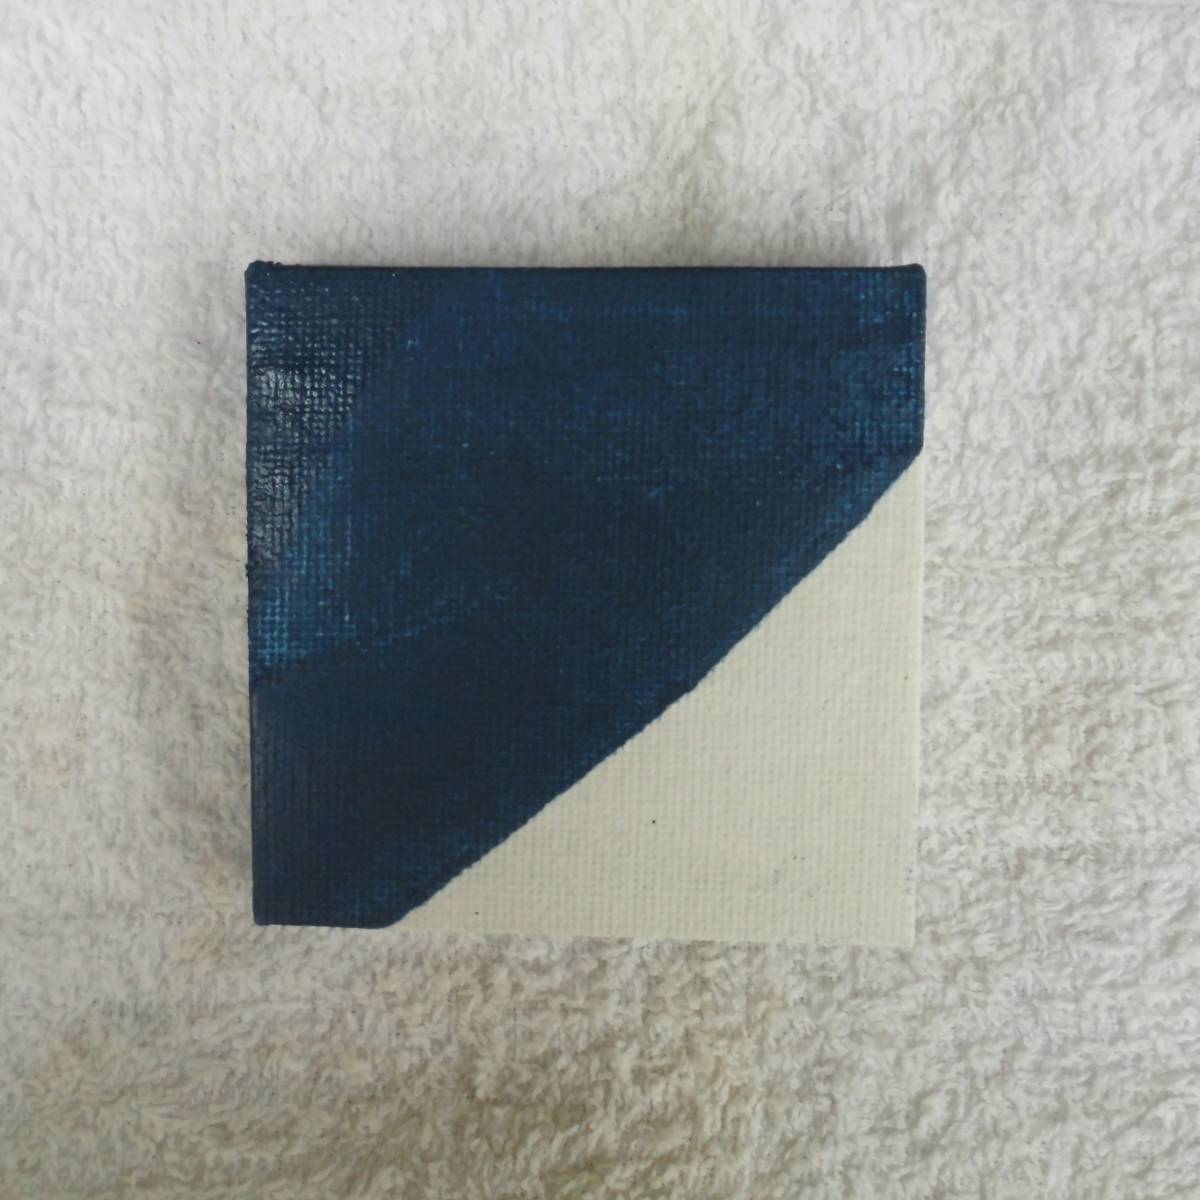 □ तेल चित्रकला नीली श्रृंखला / छोटा टुकड़ा 20.09. बी, चित्रकारी, तैल चित्र, अमूर्त चित्रकारी